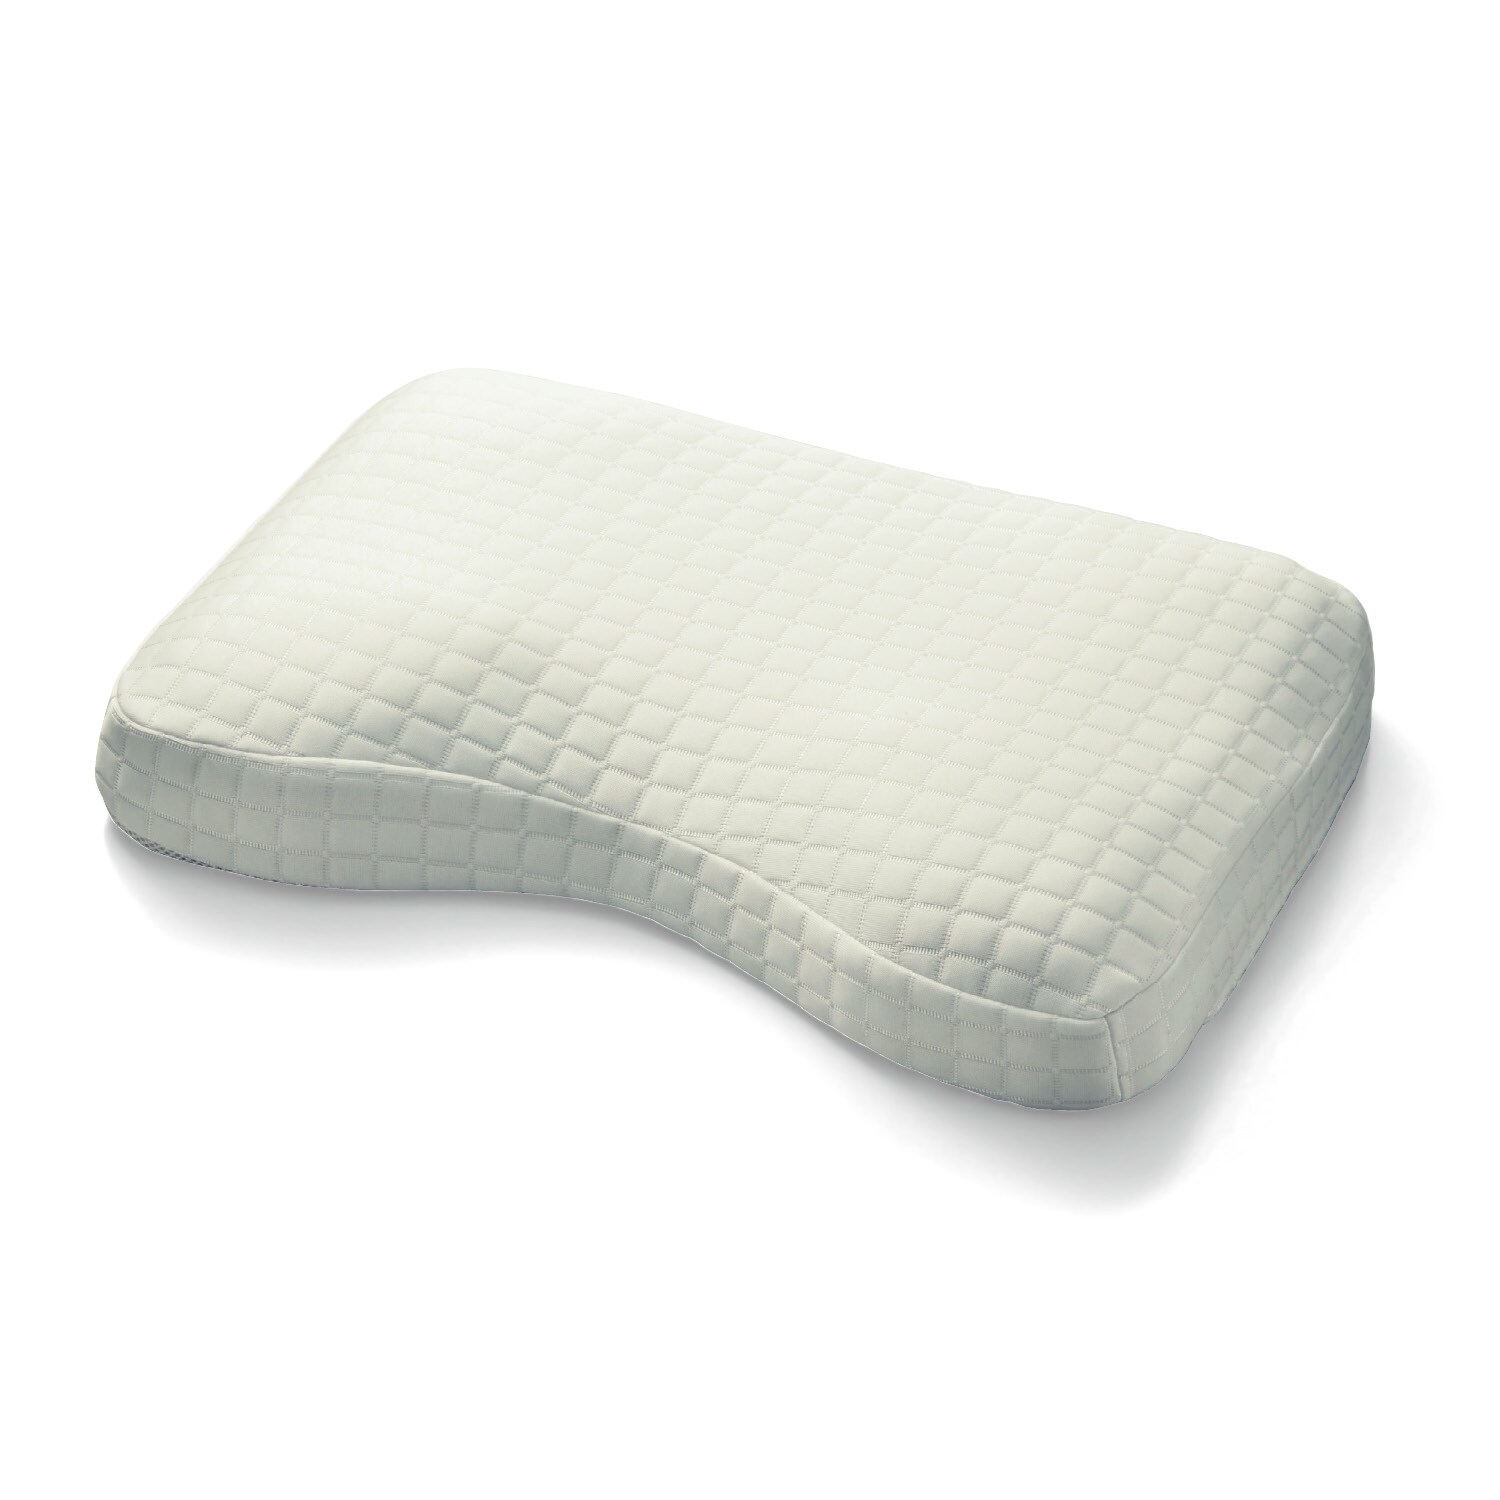 【ベルメゾン】【ひんやり】ひんやりウレタンとひんやり側地のトリプル冷感枕